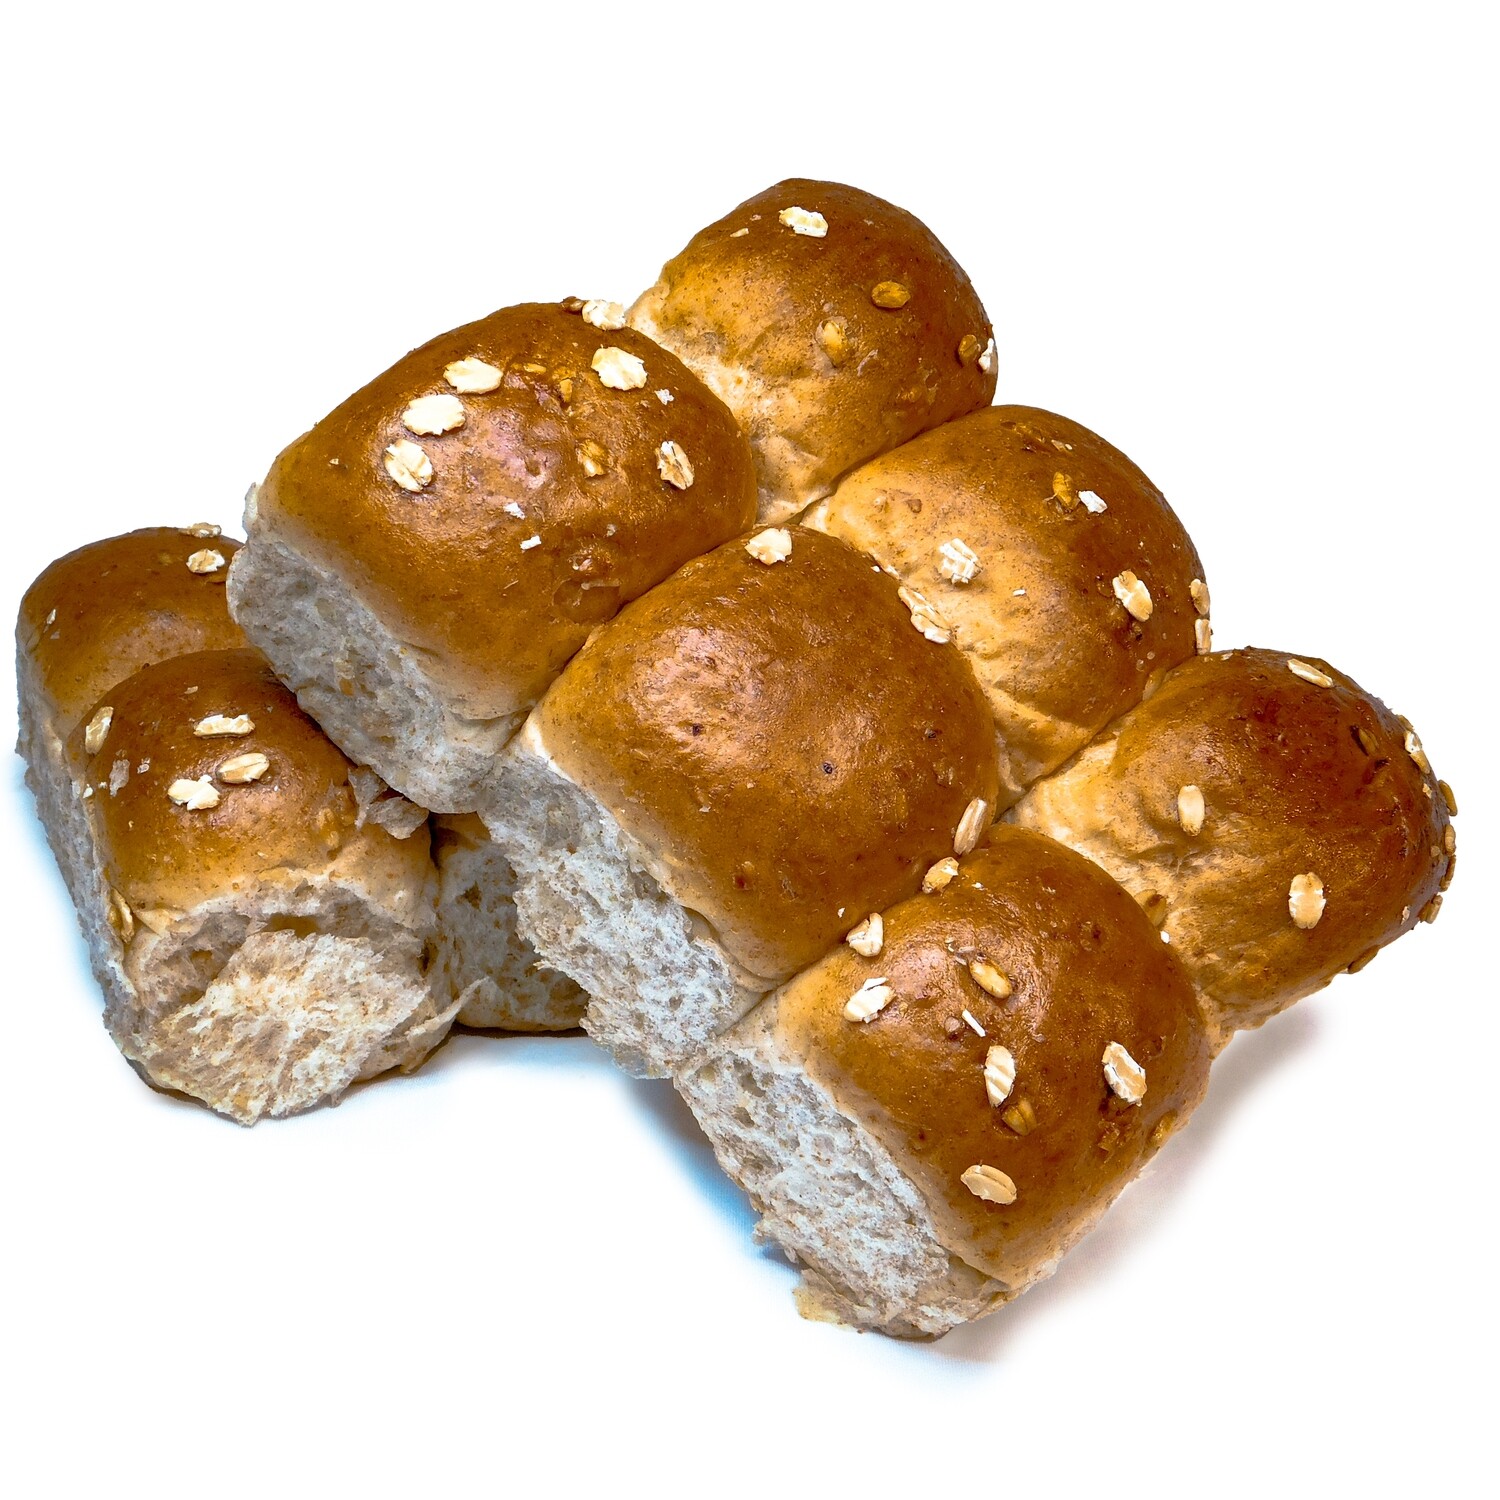 Oatmeal Bread Rolls